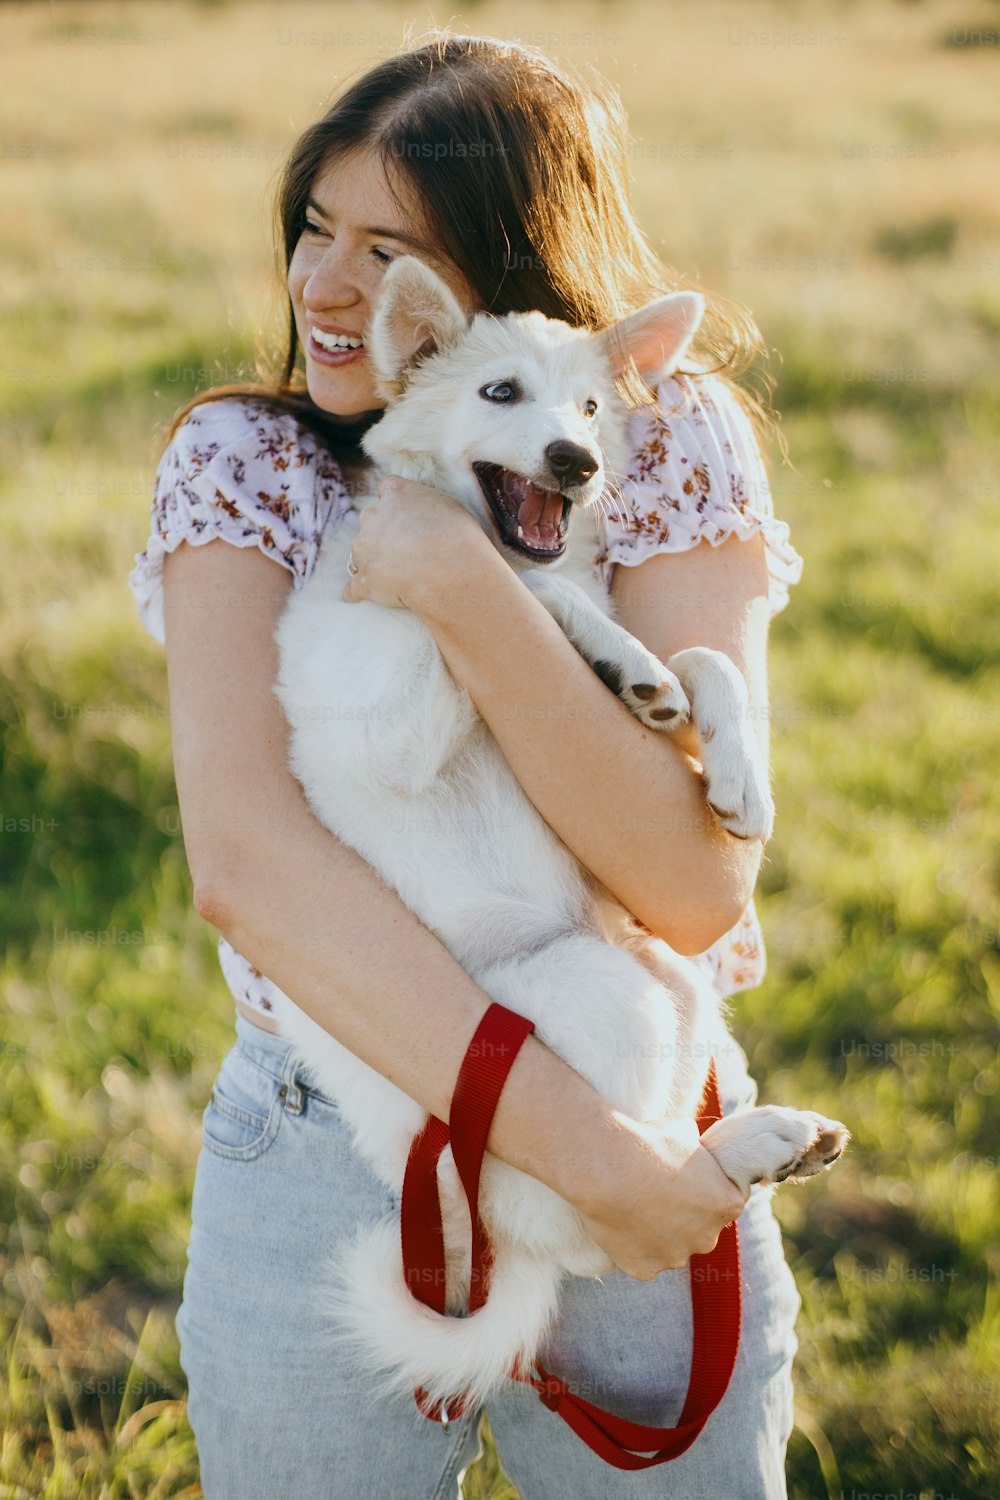 Donna felice alla moda che abbraccia un cucciolo bianco carino e divertente nella calda luce del tramonto nel prato estivo. Giovane femmina casuale che gioca con l'adorabile cucciolo di peloso pastore svizzero. Bellissimi momenti divertenti